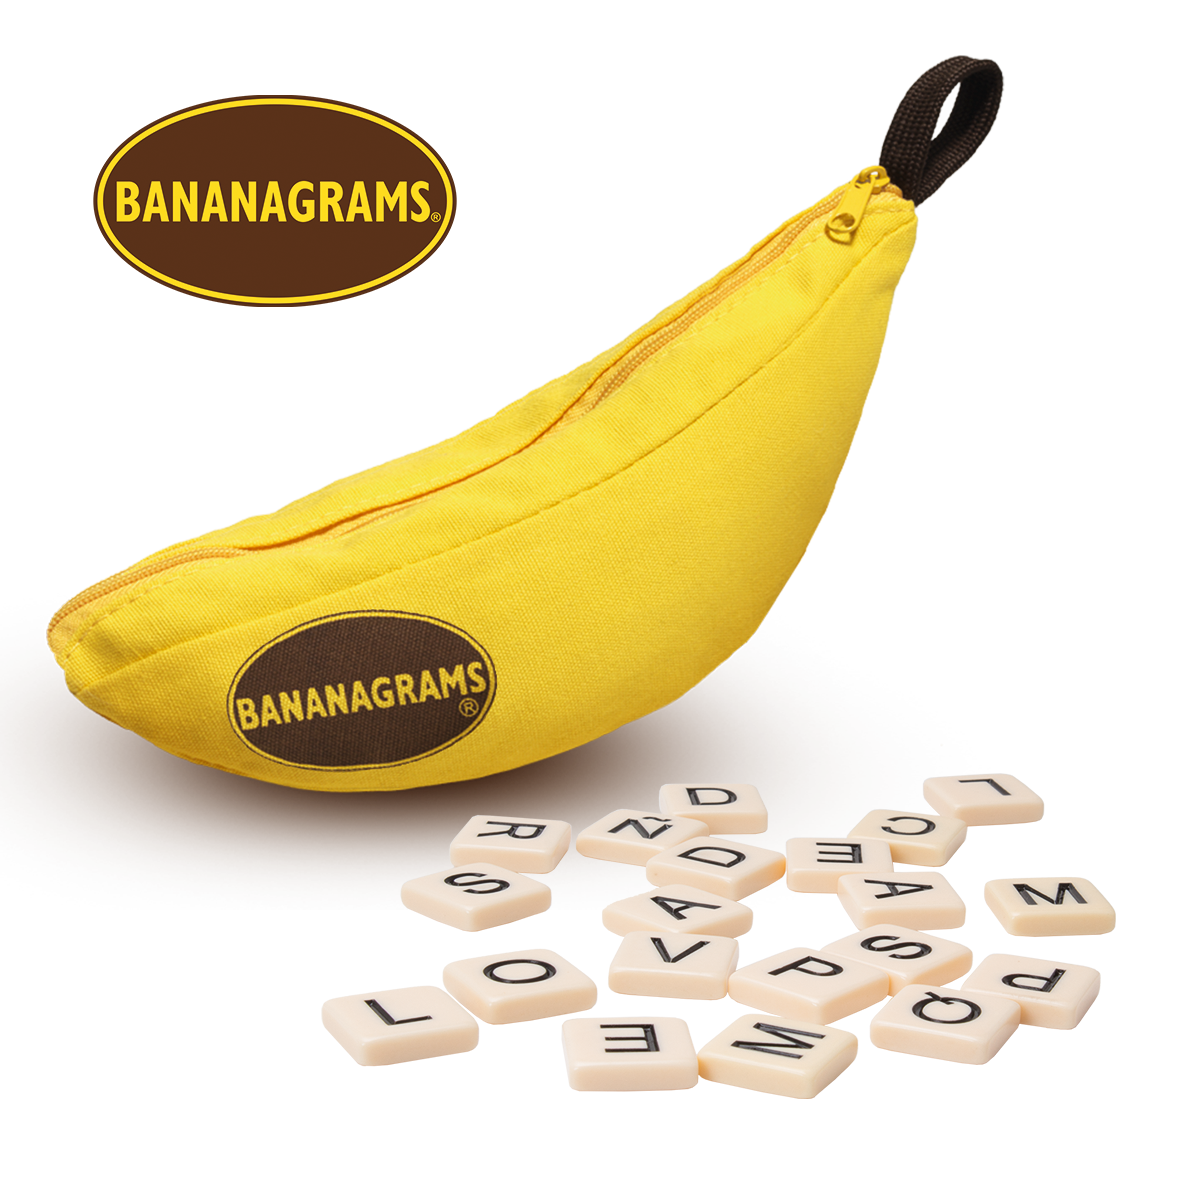 Bananagrams - Juego de palabras cruzadas